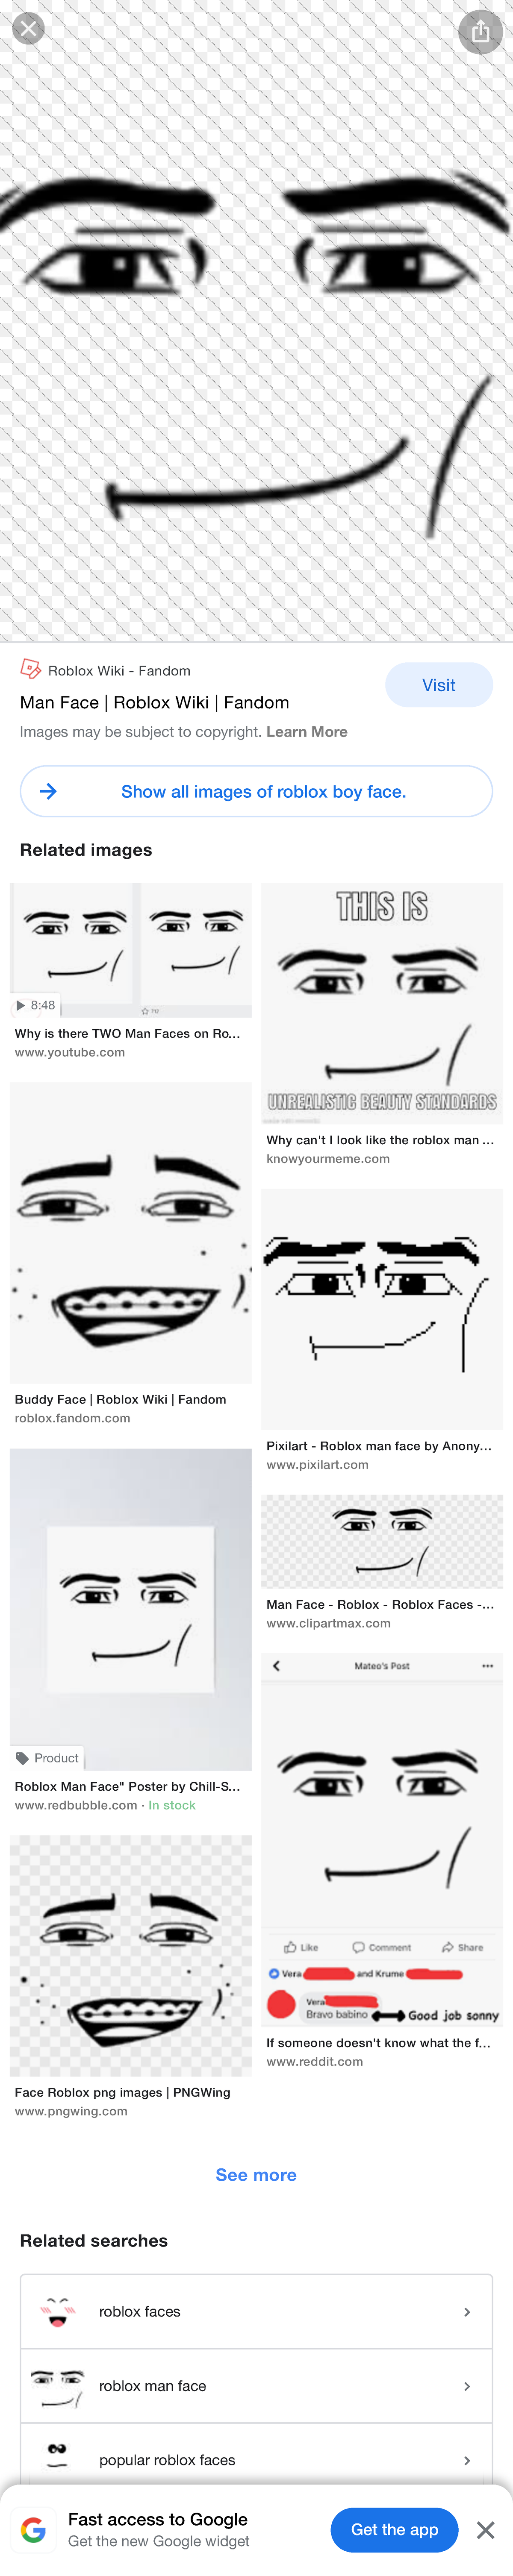 Man Face, Roblox Wiki